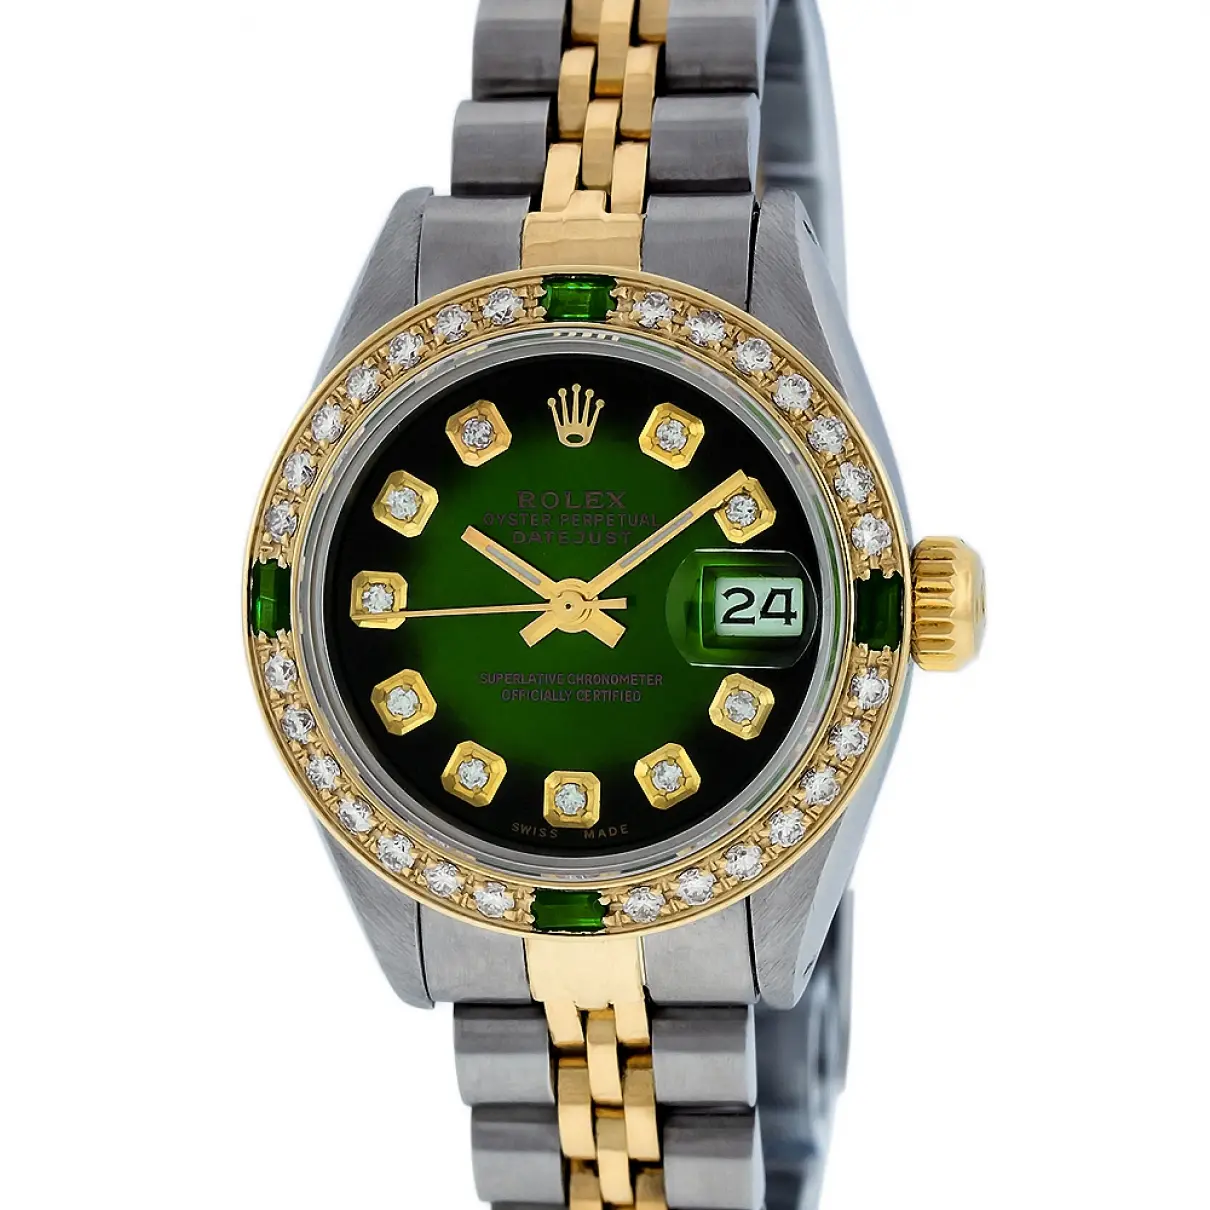 Datejust watch Rolex - Vintage